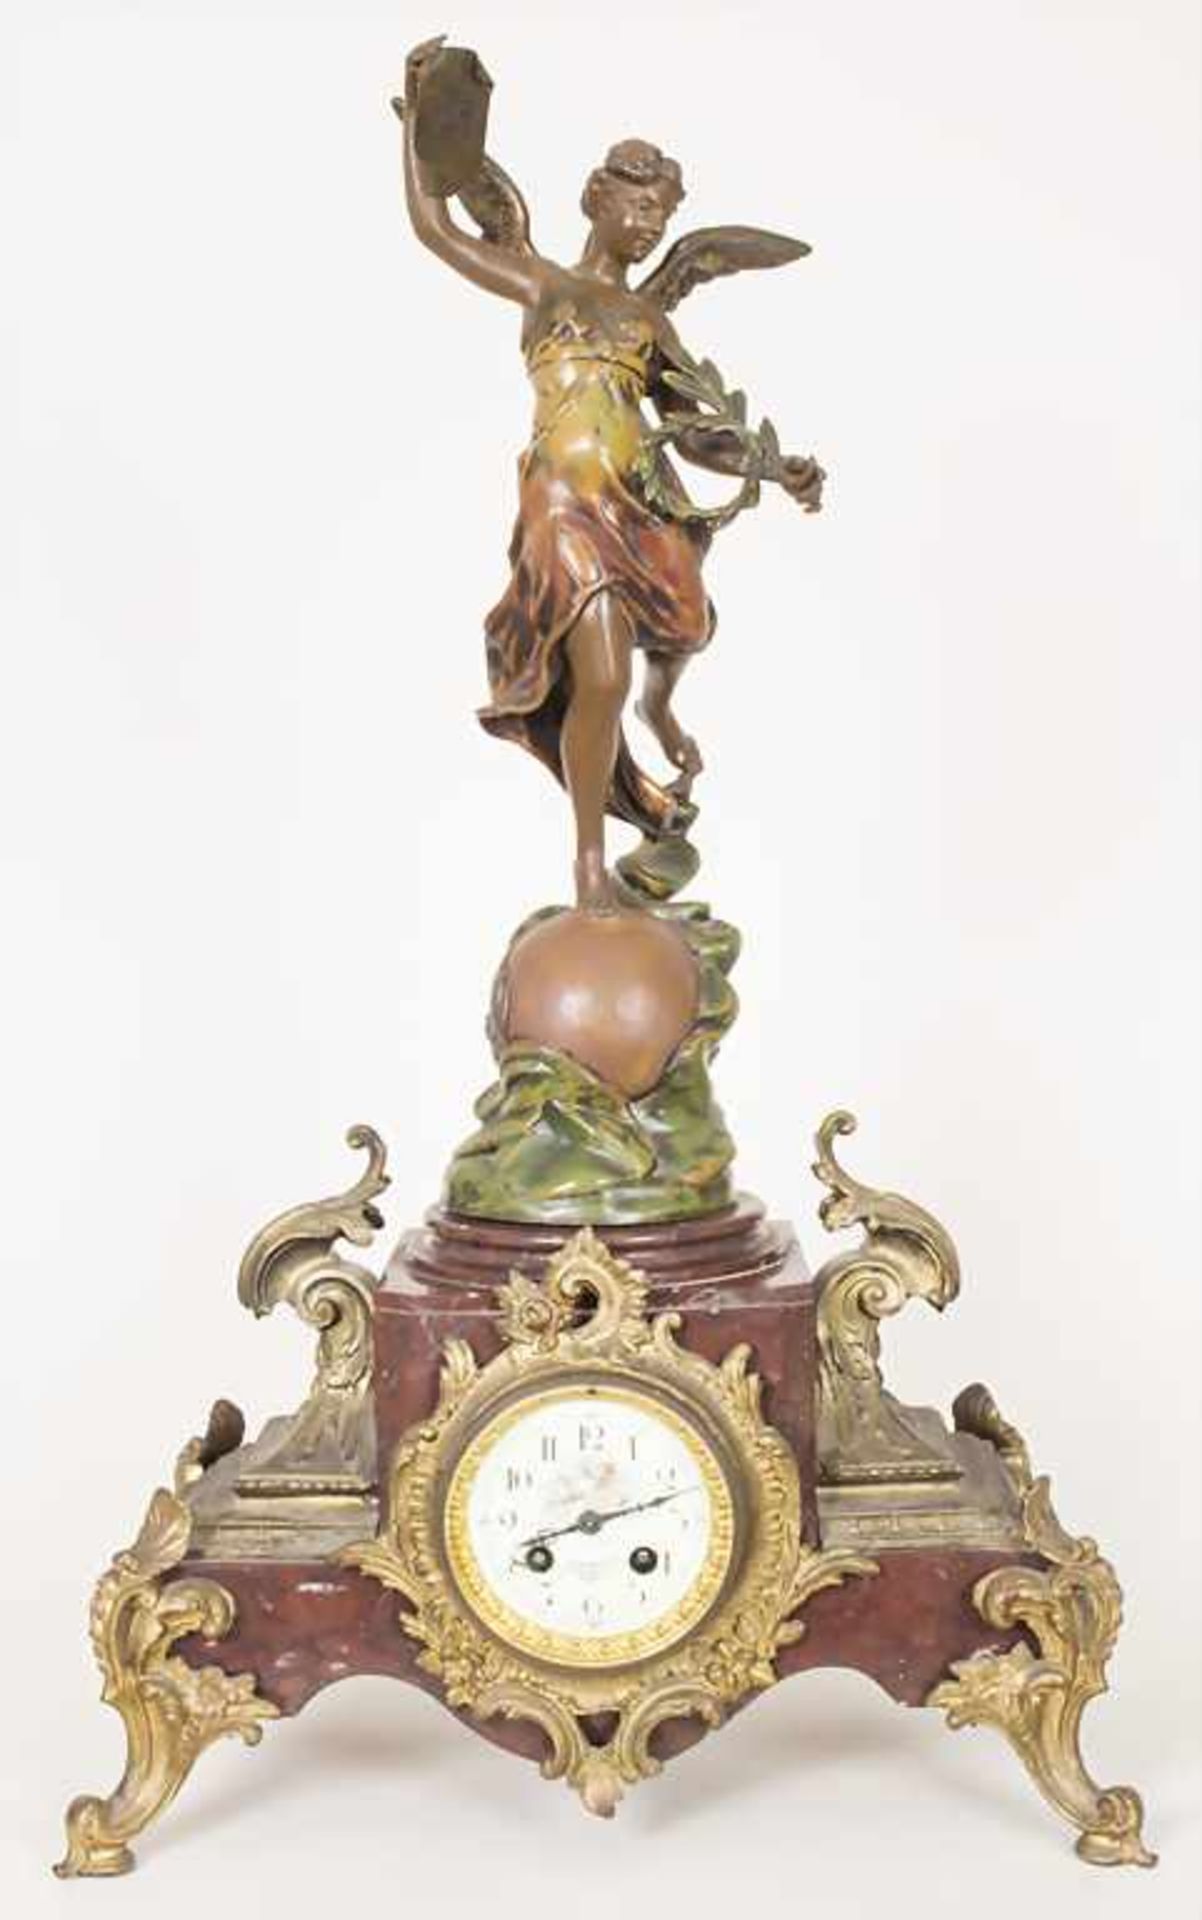 Pendule Siegesgöttin, Napoleon III, Paris, um 1900Gehäuse: Metall polychrom gefaßt,Uhrwerk: